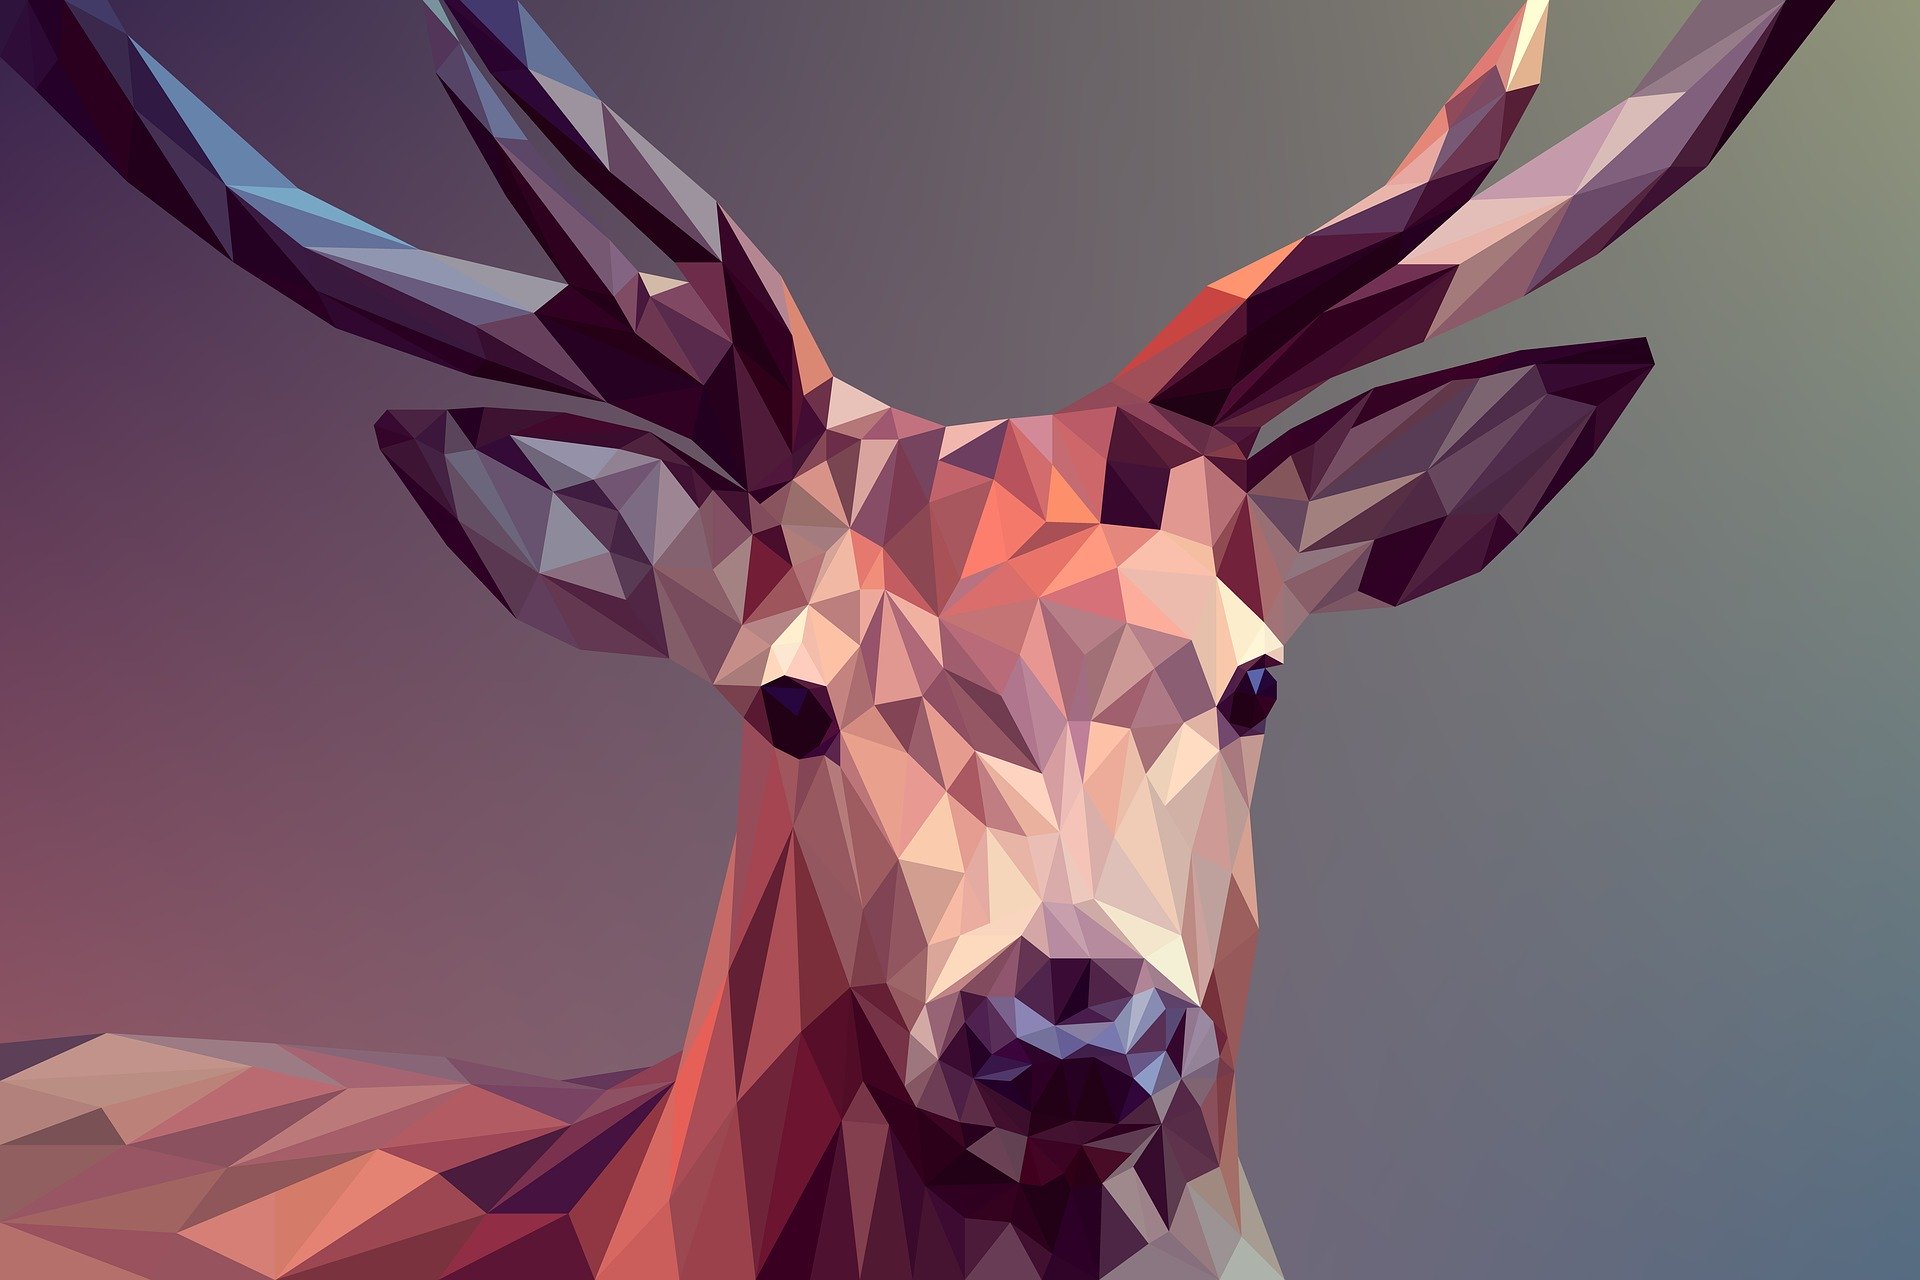 Deer polygons art wallpaper